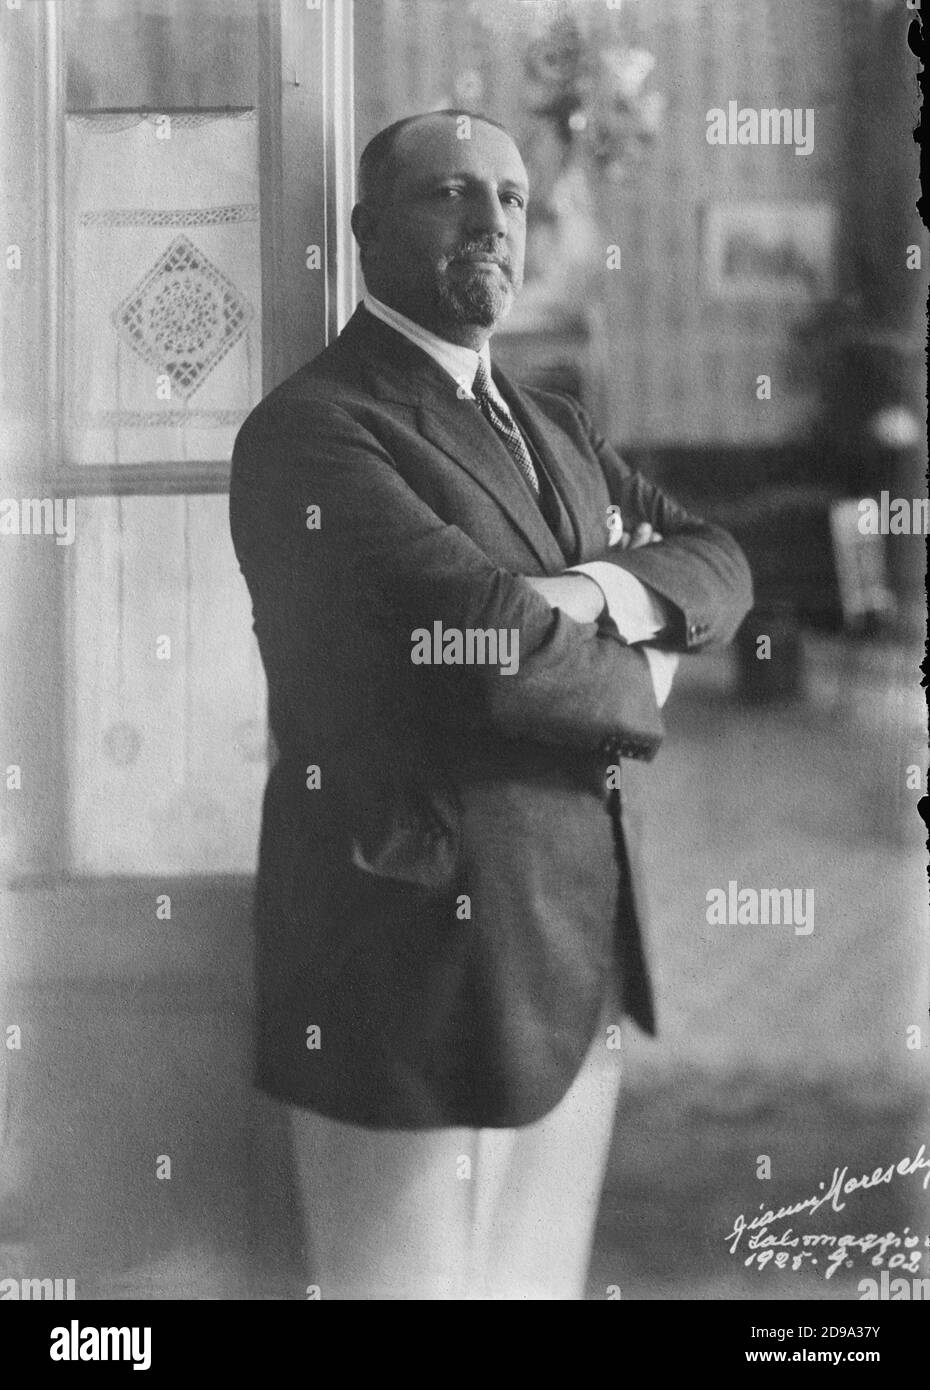 1925 , Salsomaggiore Terme , Parma , ITALIA : il conte italiano GIUSEPPE VOLPI di MISURATA ( 1877 - 1947 ) , responsabile del debito commerciale con Italia e USA . Foto di Gianni Maresca , Salsomaggiore - nobiltà italiana - nobiltà - ritratto - ritratto - barba - barba - barba - colletto - colletto - cravatta - conte - FASCISMO - FASCISTA - FASCISMO - politico - politico --- Archivio GBB Foto Stock